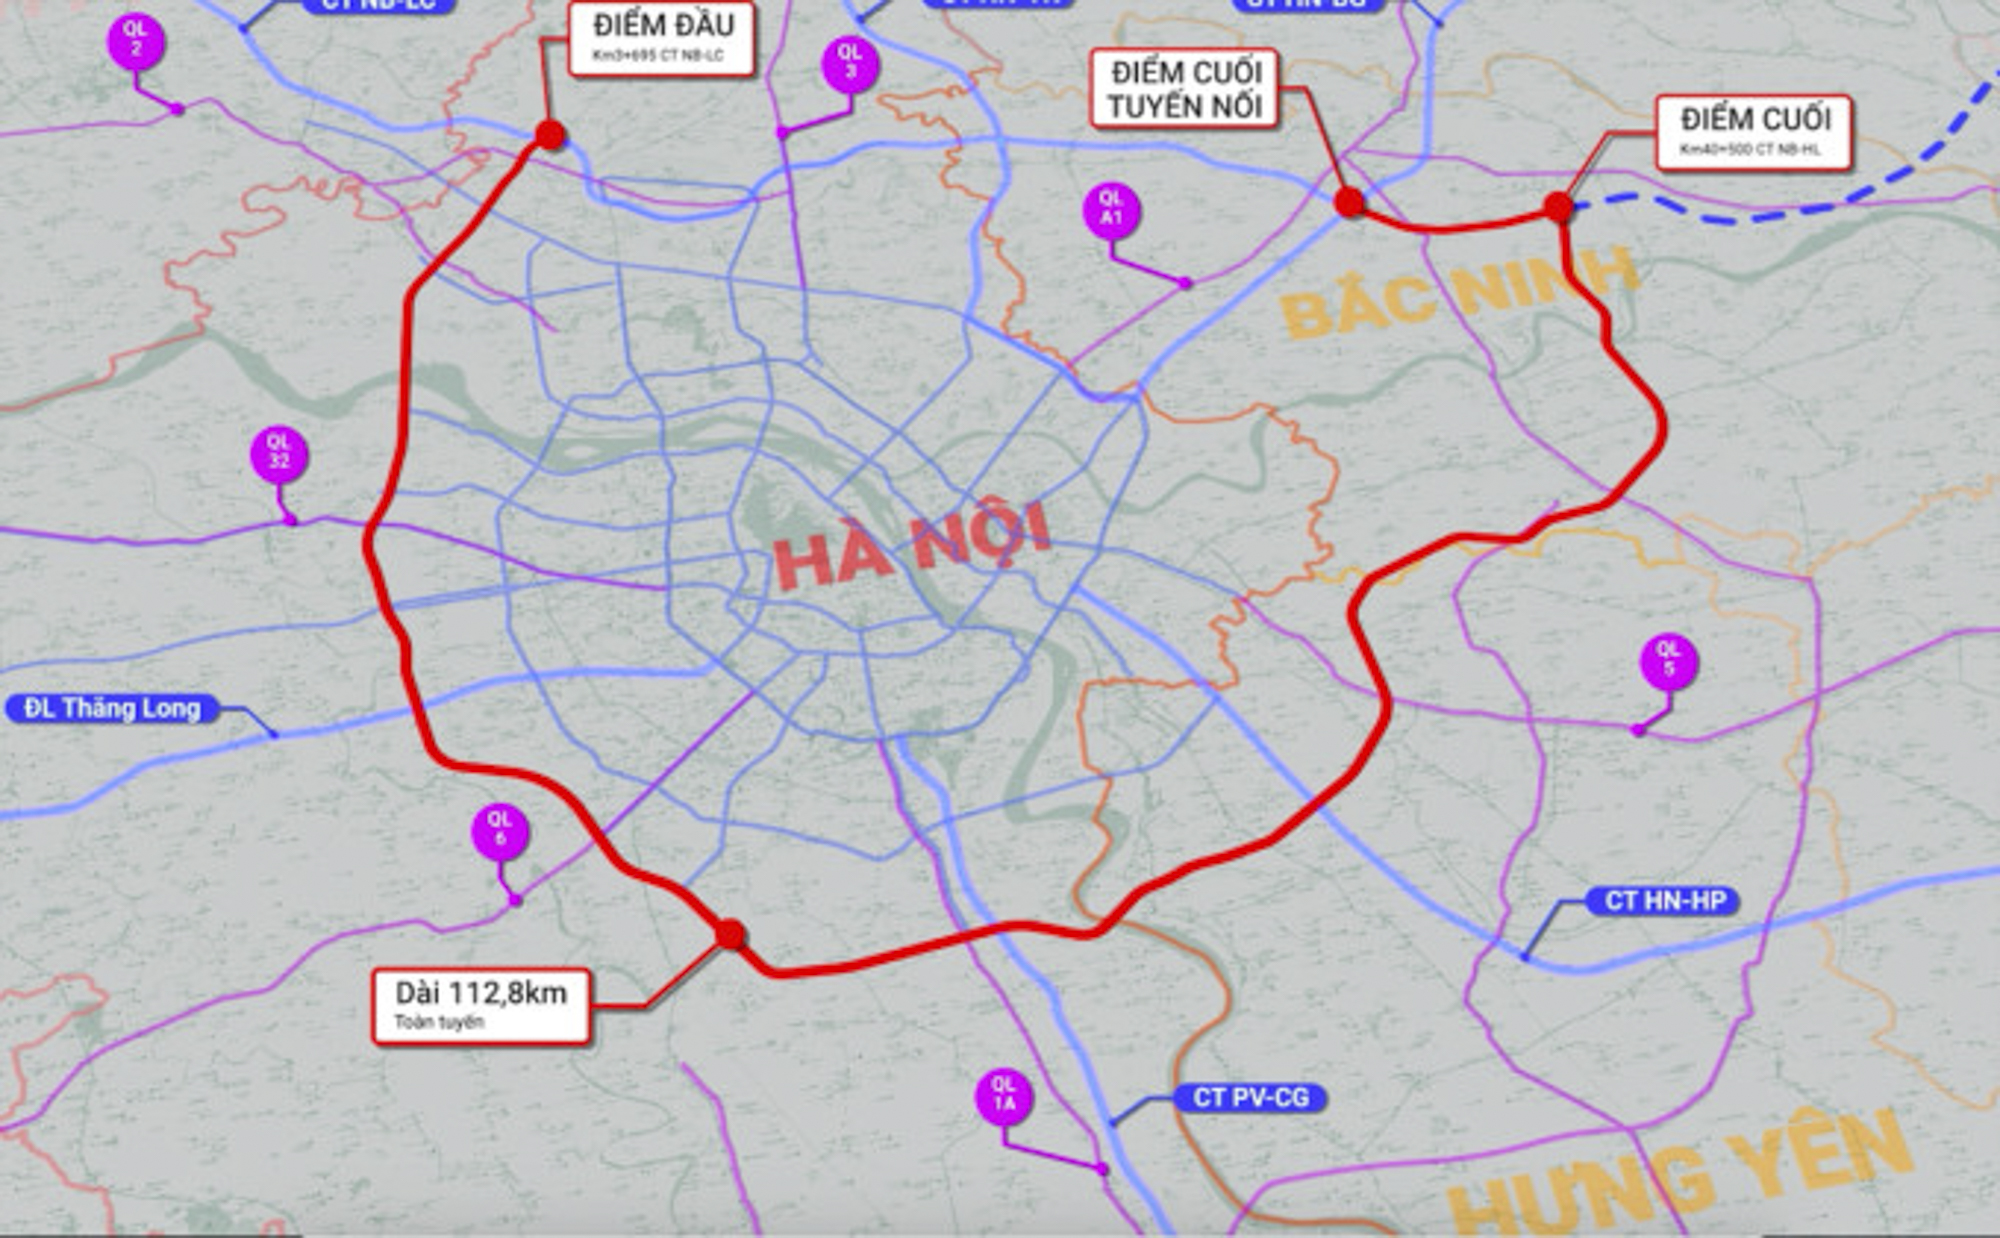 Toàn cảnh dự án Vành đai 4 qua huyện Mê Linh: Tiến độ thần tốc, dự kiến hoàn thành đường song hành sau 6 tháng nữa, chuẩn bị khởi công cầu 10.000 tỷ- Ảnh 1.